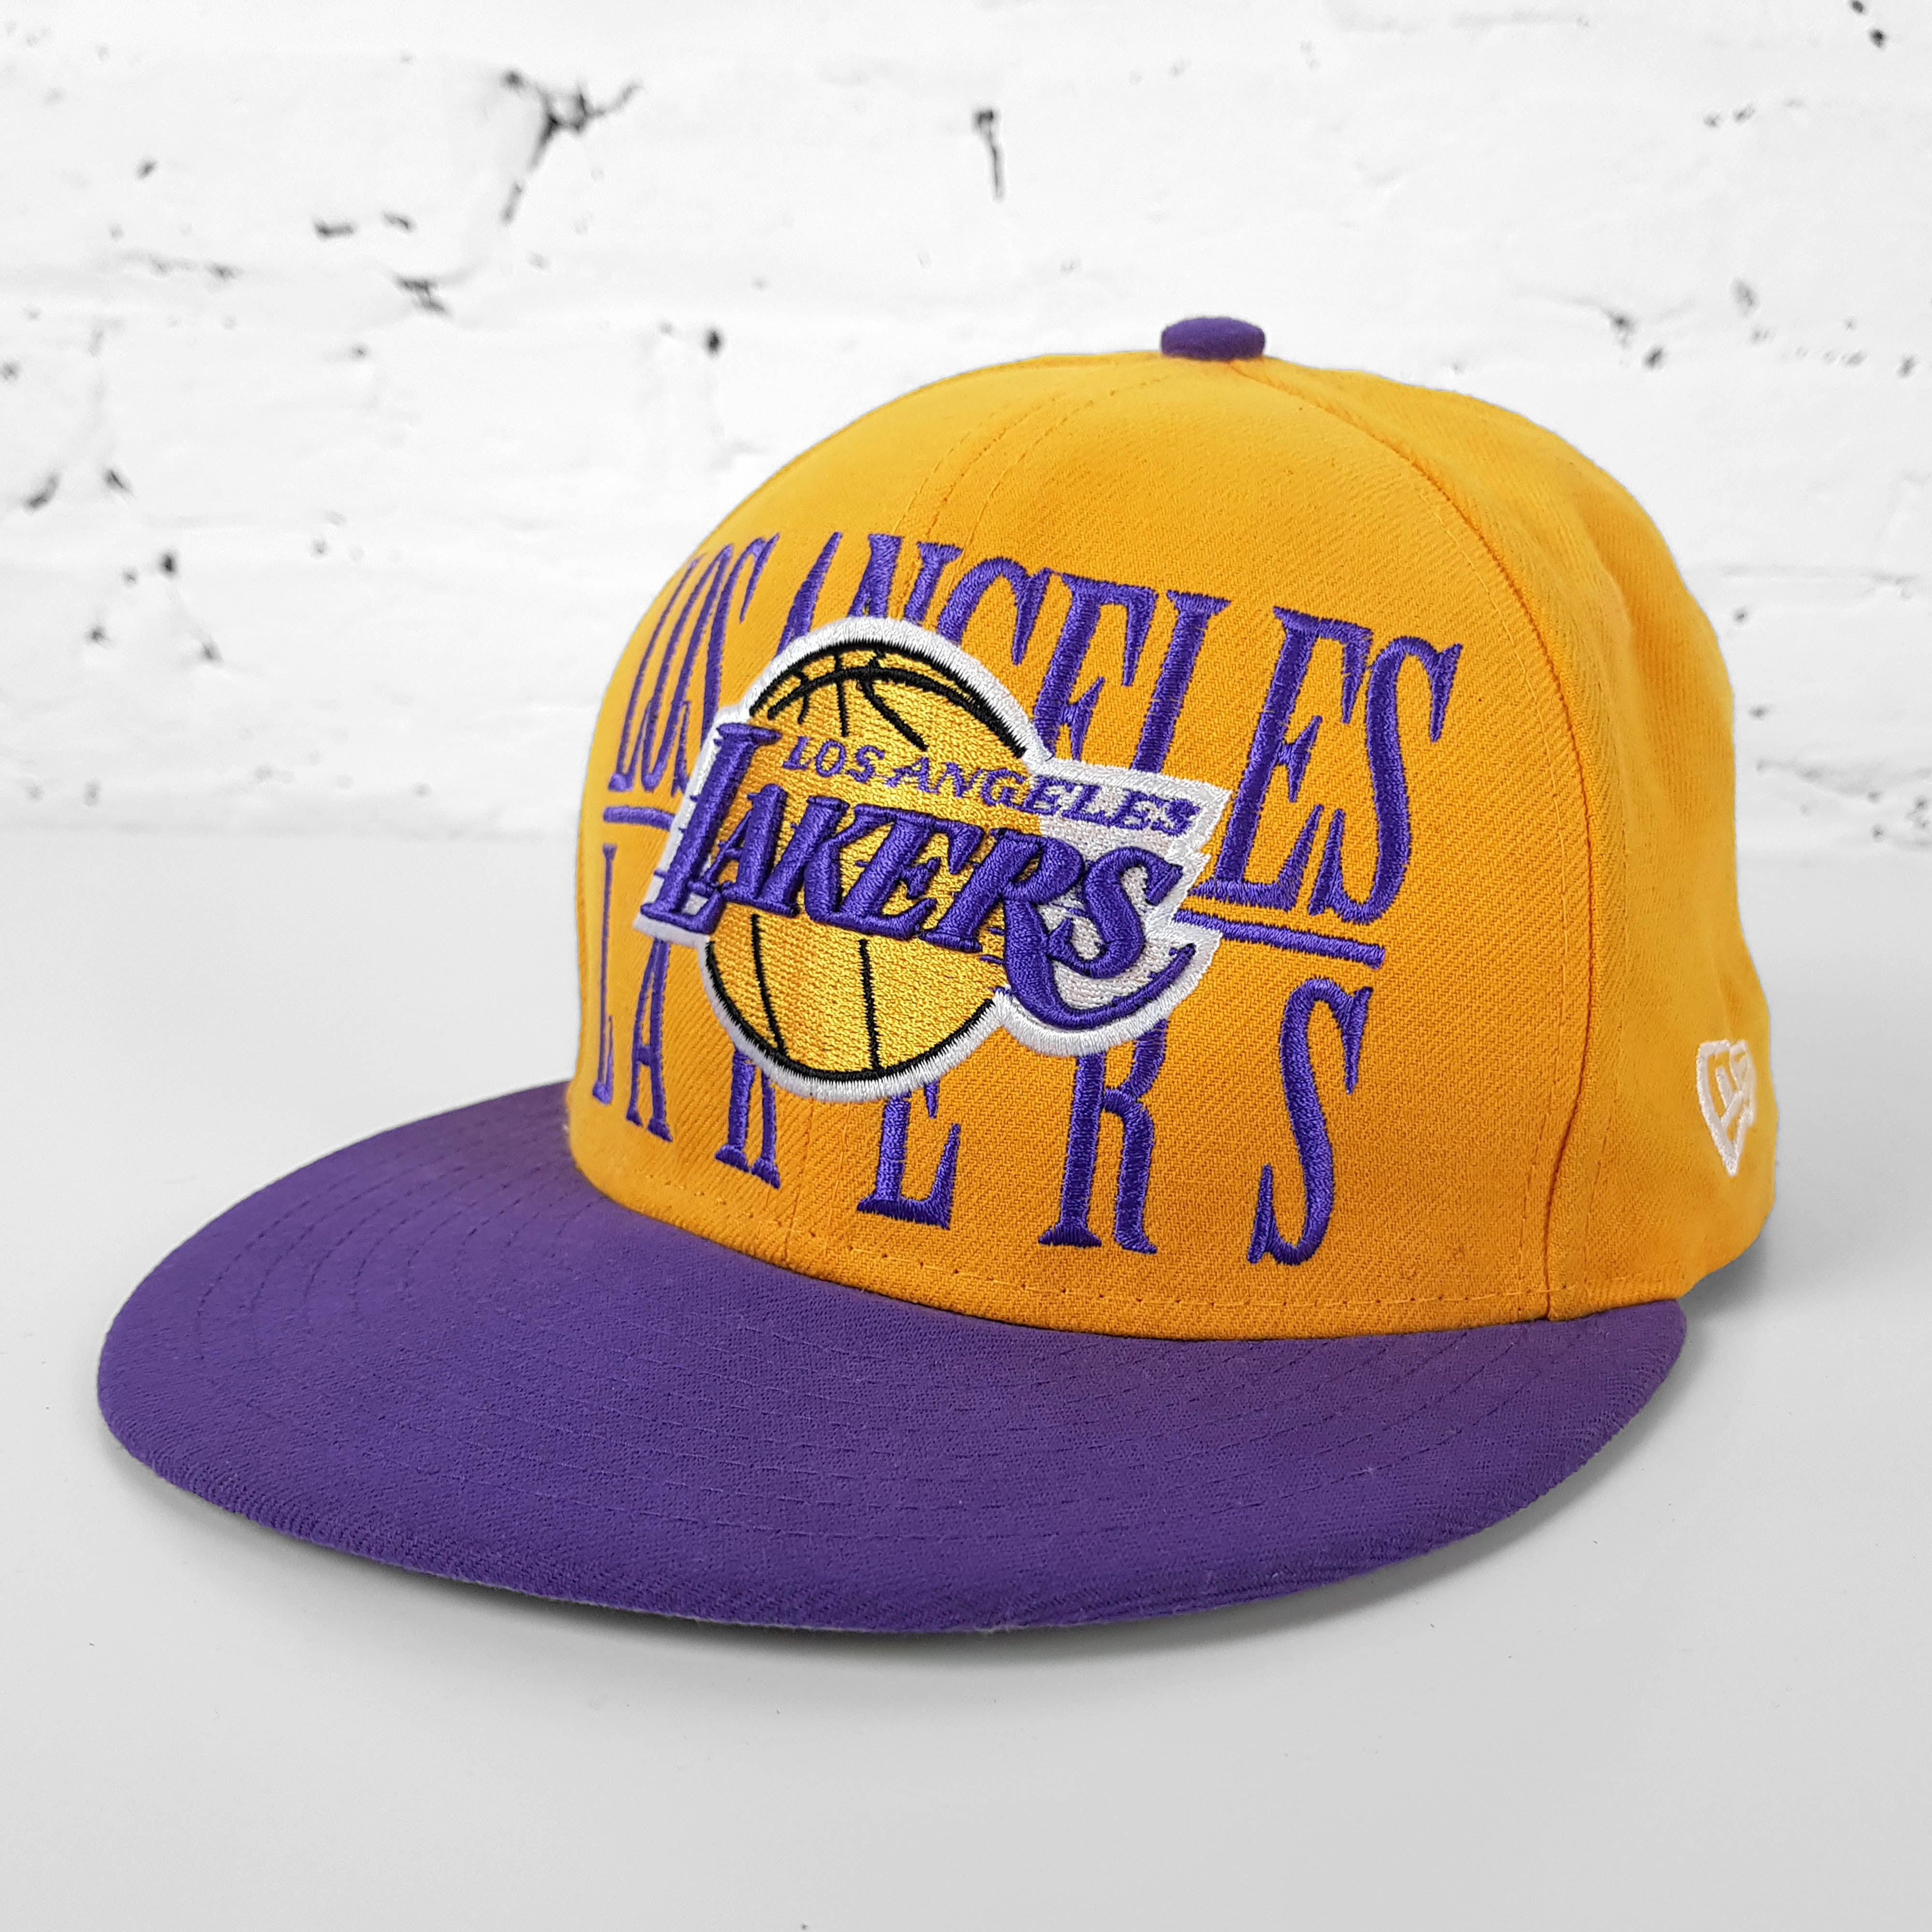 Lakers Caps